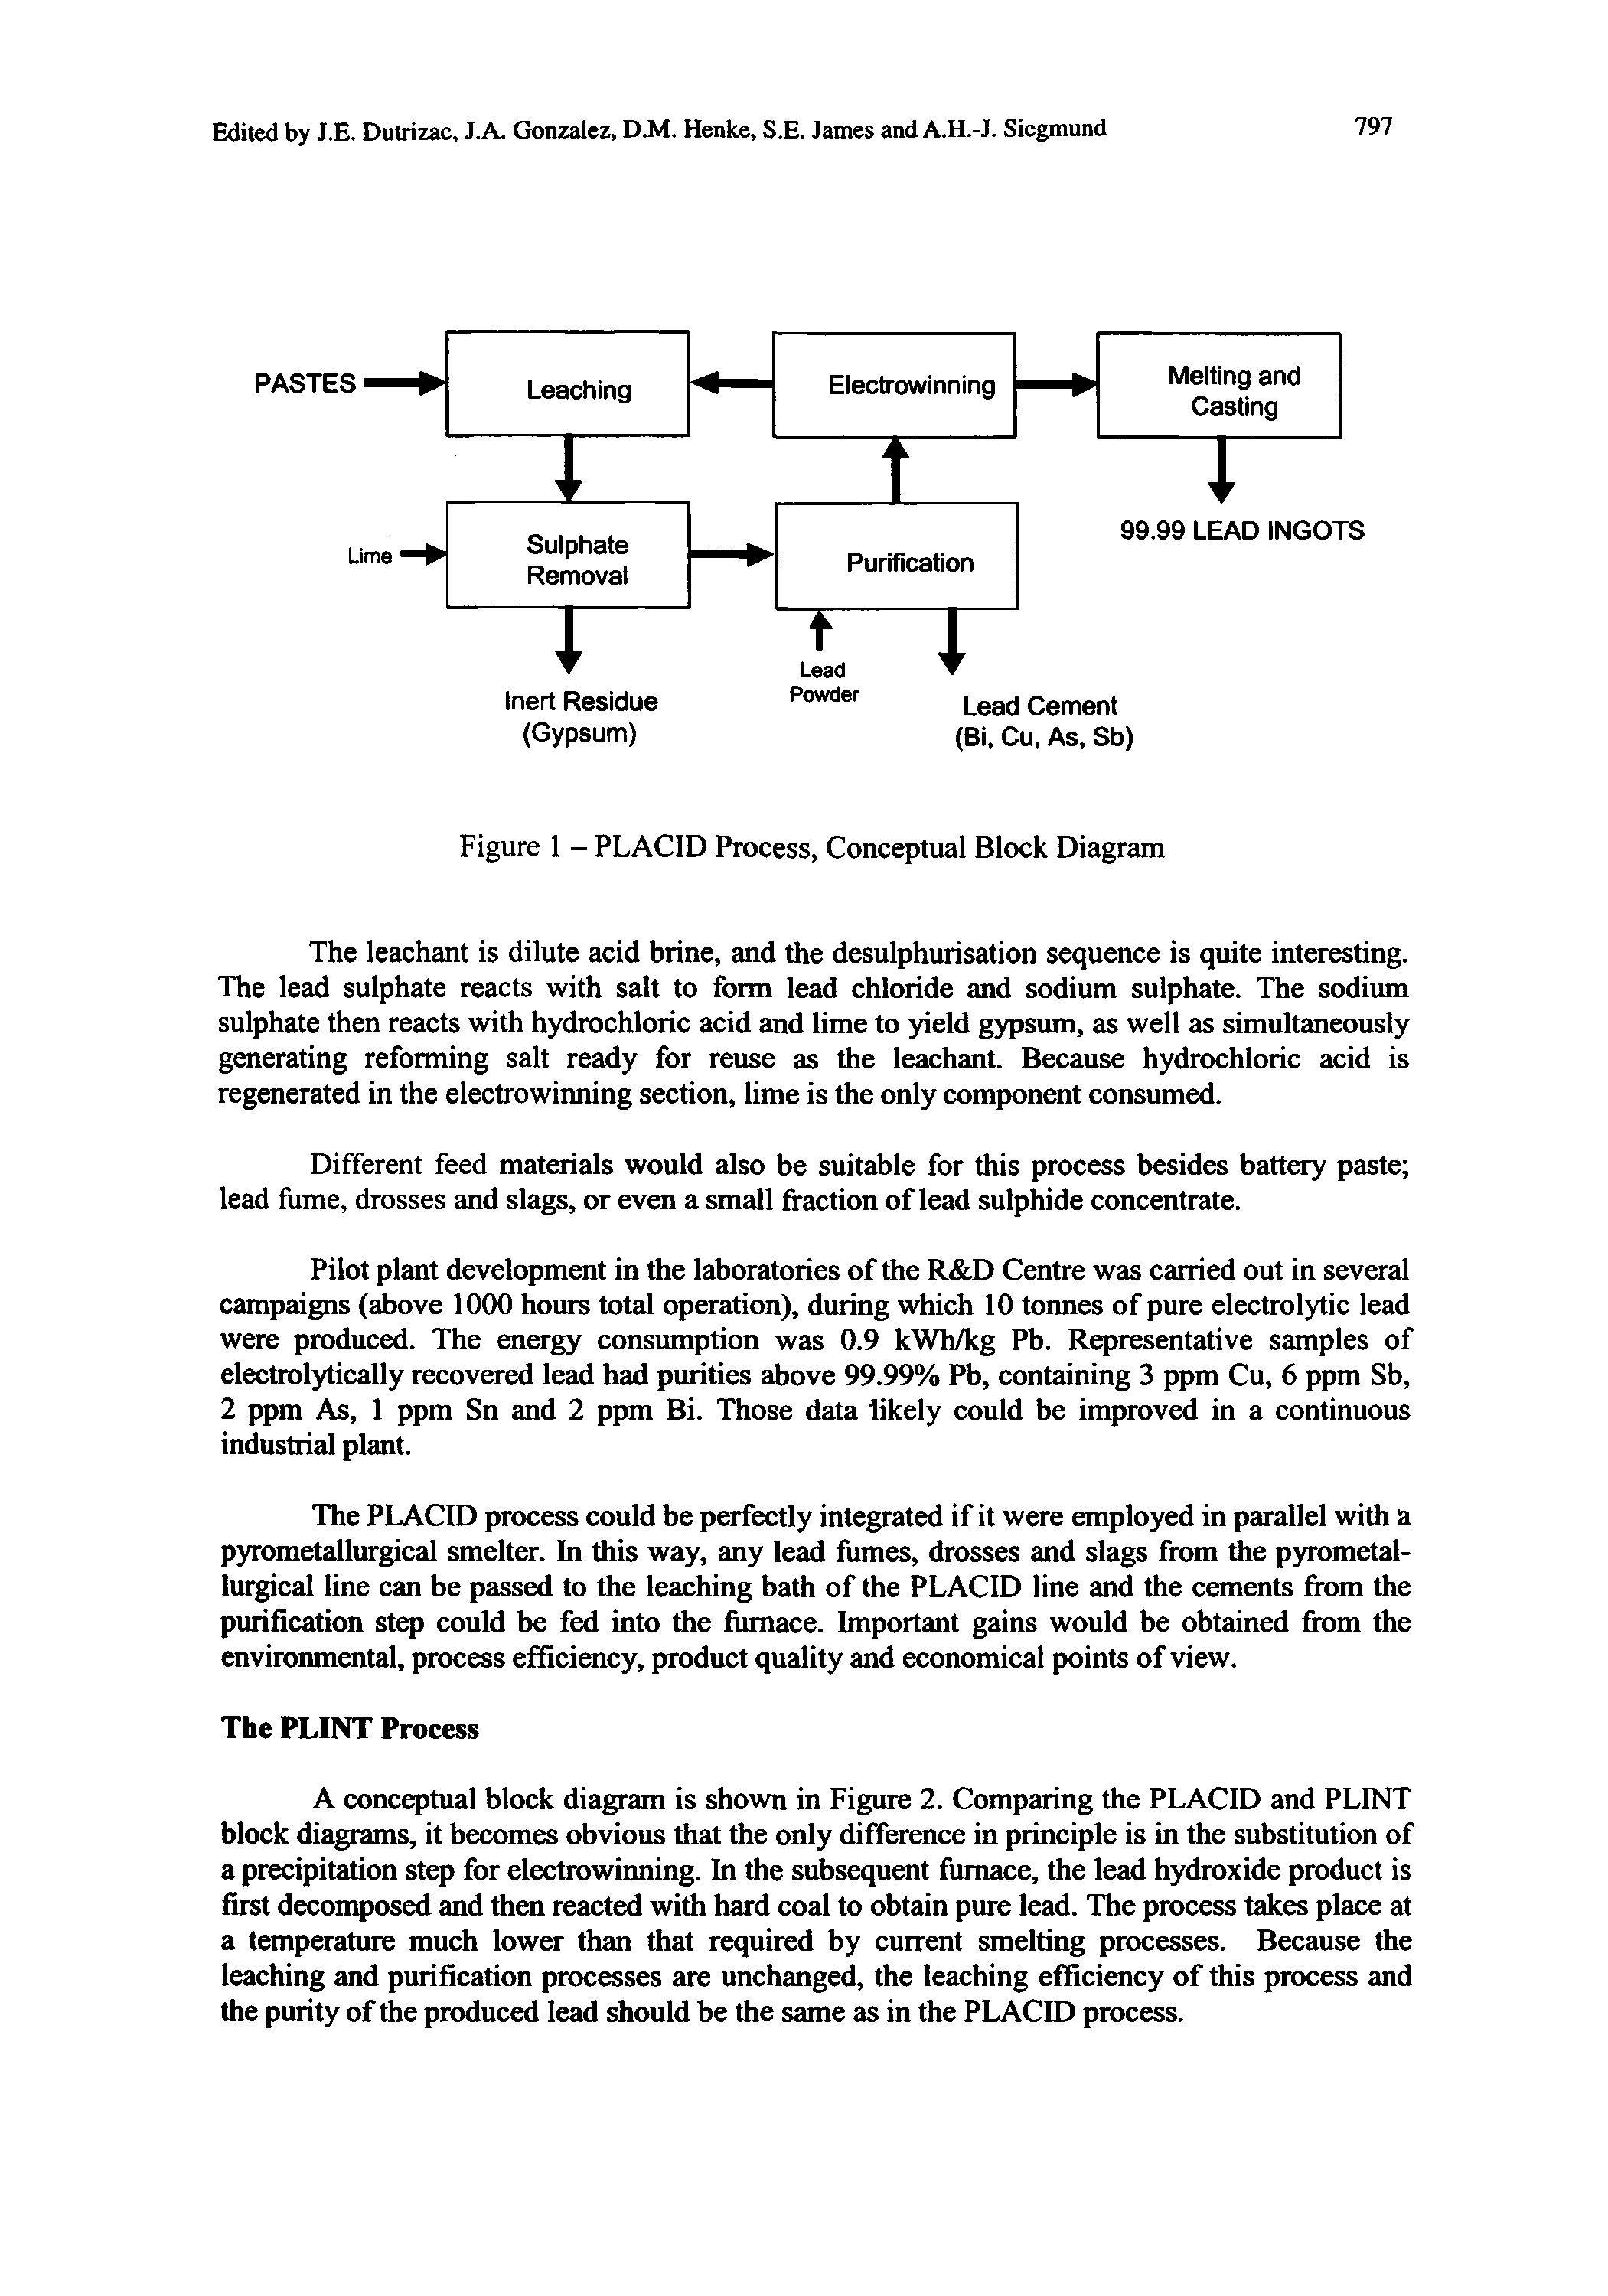 Figure 1 - PLACID Process, Conceptual Block Diagram...